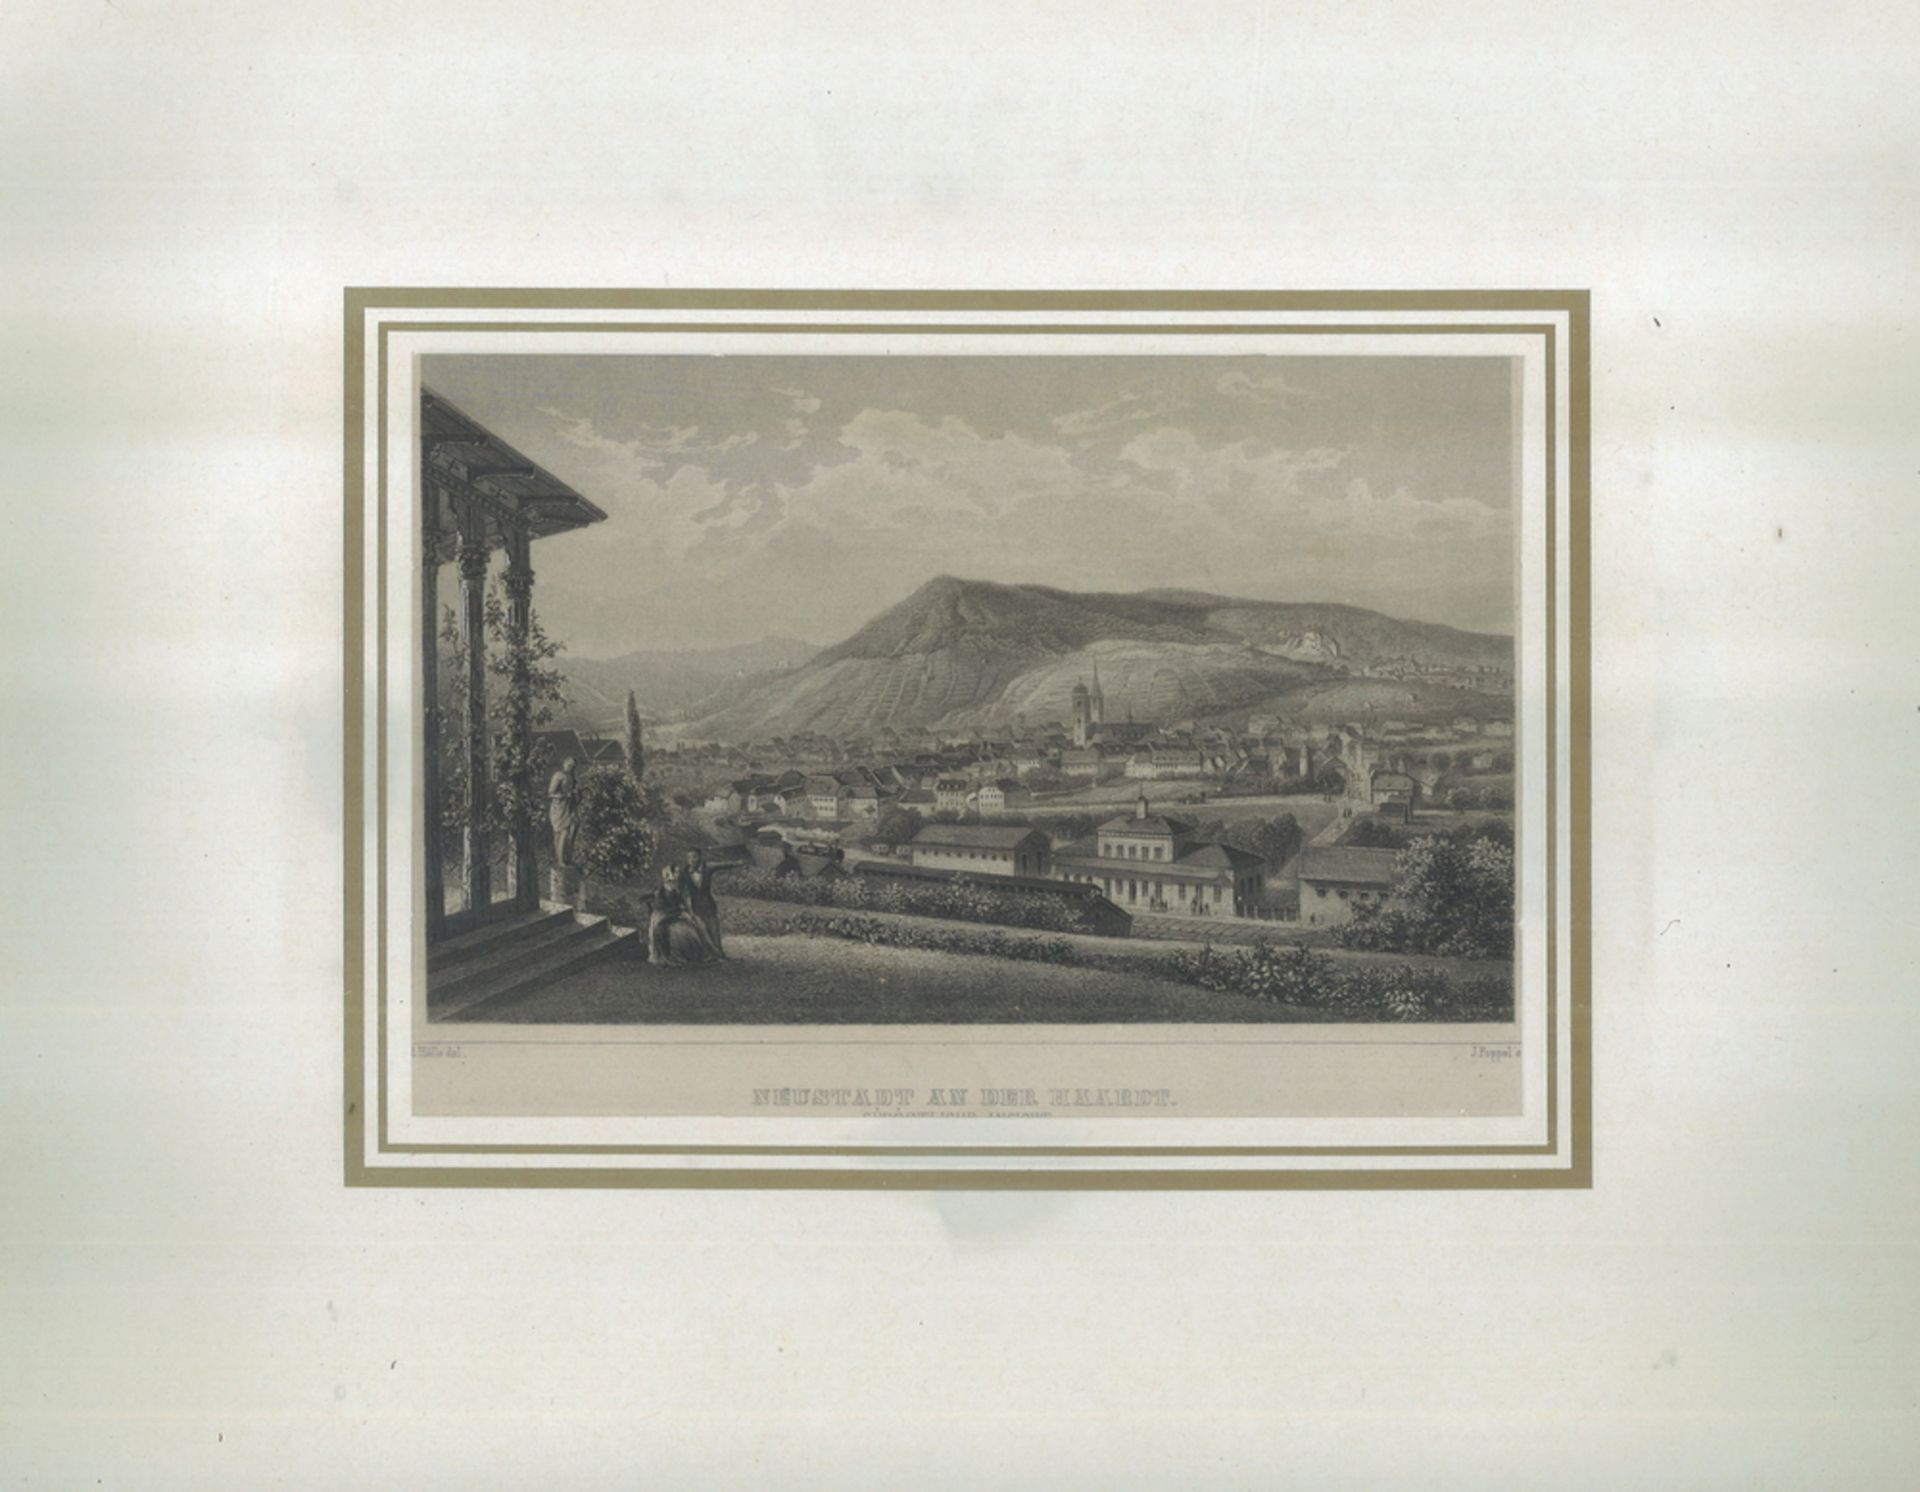 Stahlstich von J. Poppel nach R. Höfle, um 1850. "Neustadt an der Haardt. Südöstliche Ansicht."